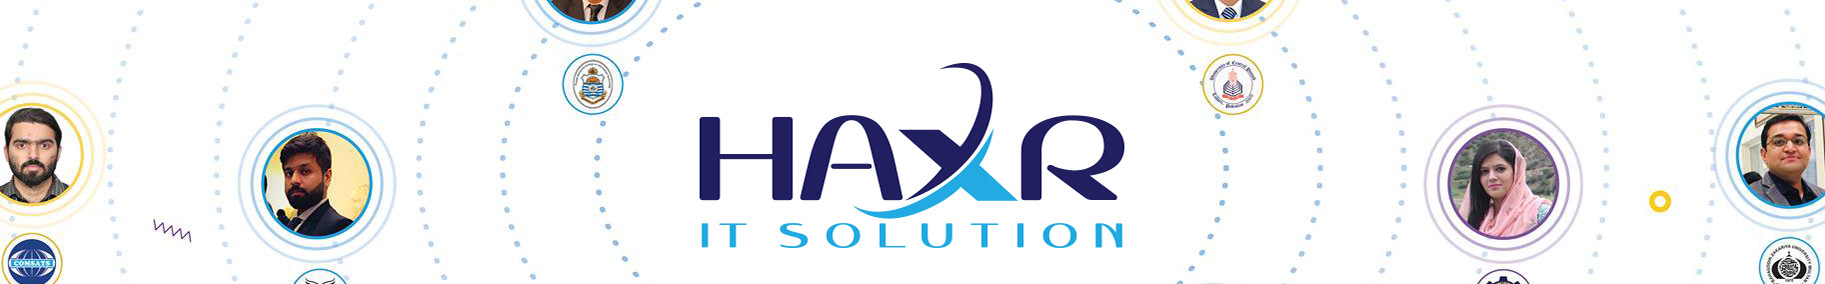 Haxr It Solutions On Behance